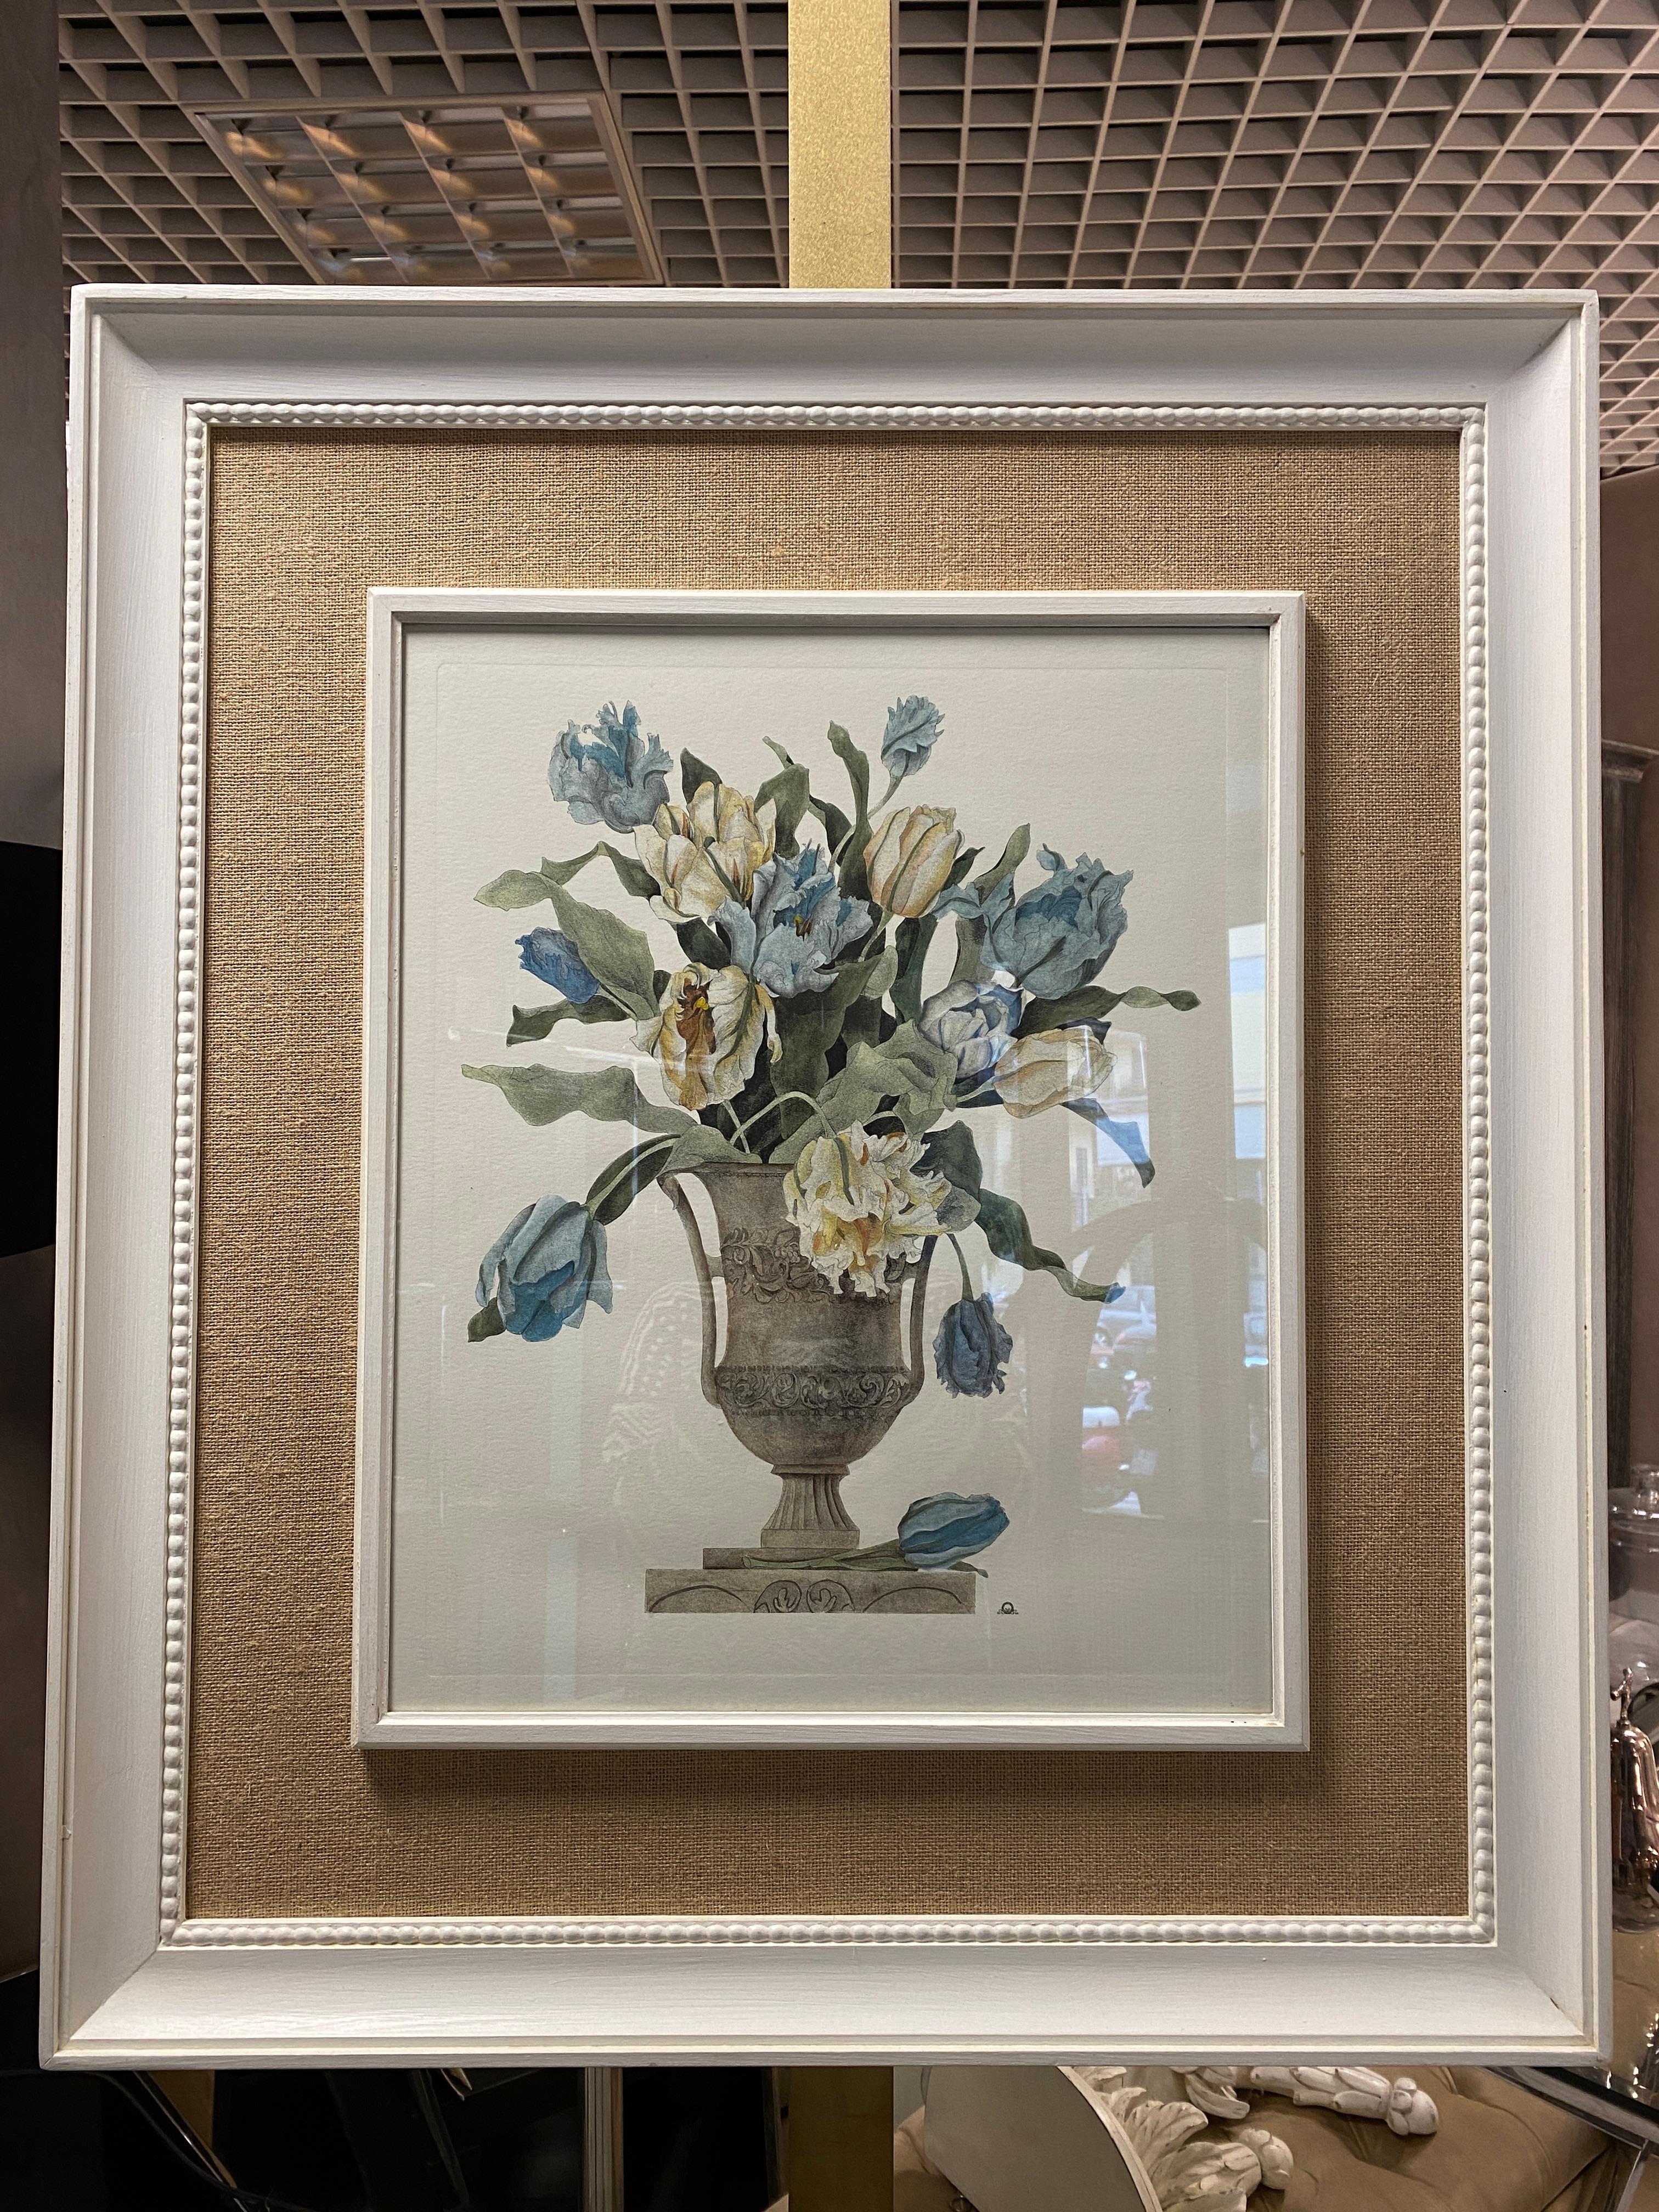 Print aus der Collection Botanique, die Tulpen Vase, mit einem schönen Holzrahmen mit einem Jute-Passpartout bereichert, die Farben und Nuancen von Aquarellfarben bringt.

Eleganter und raffinierter Druck, der eine Vase mit Blumen darstellt, genauer